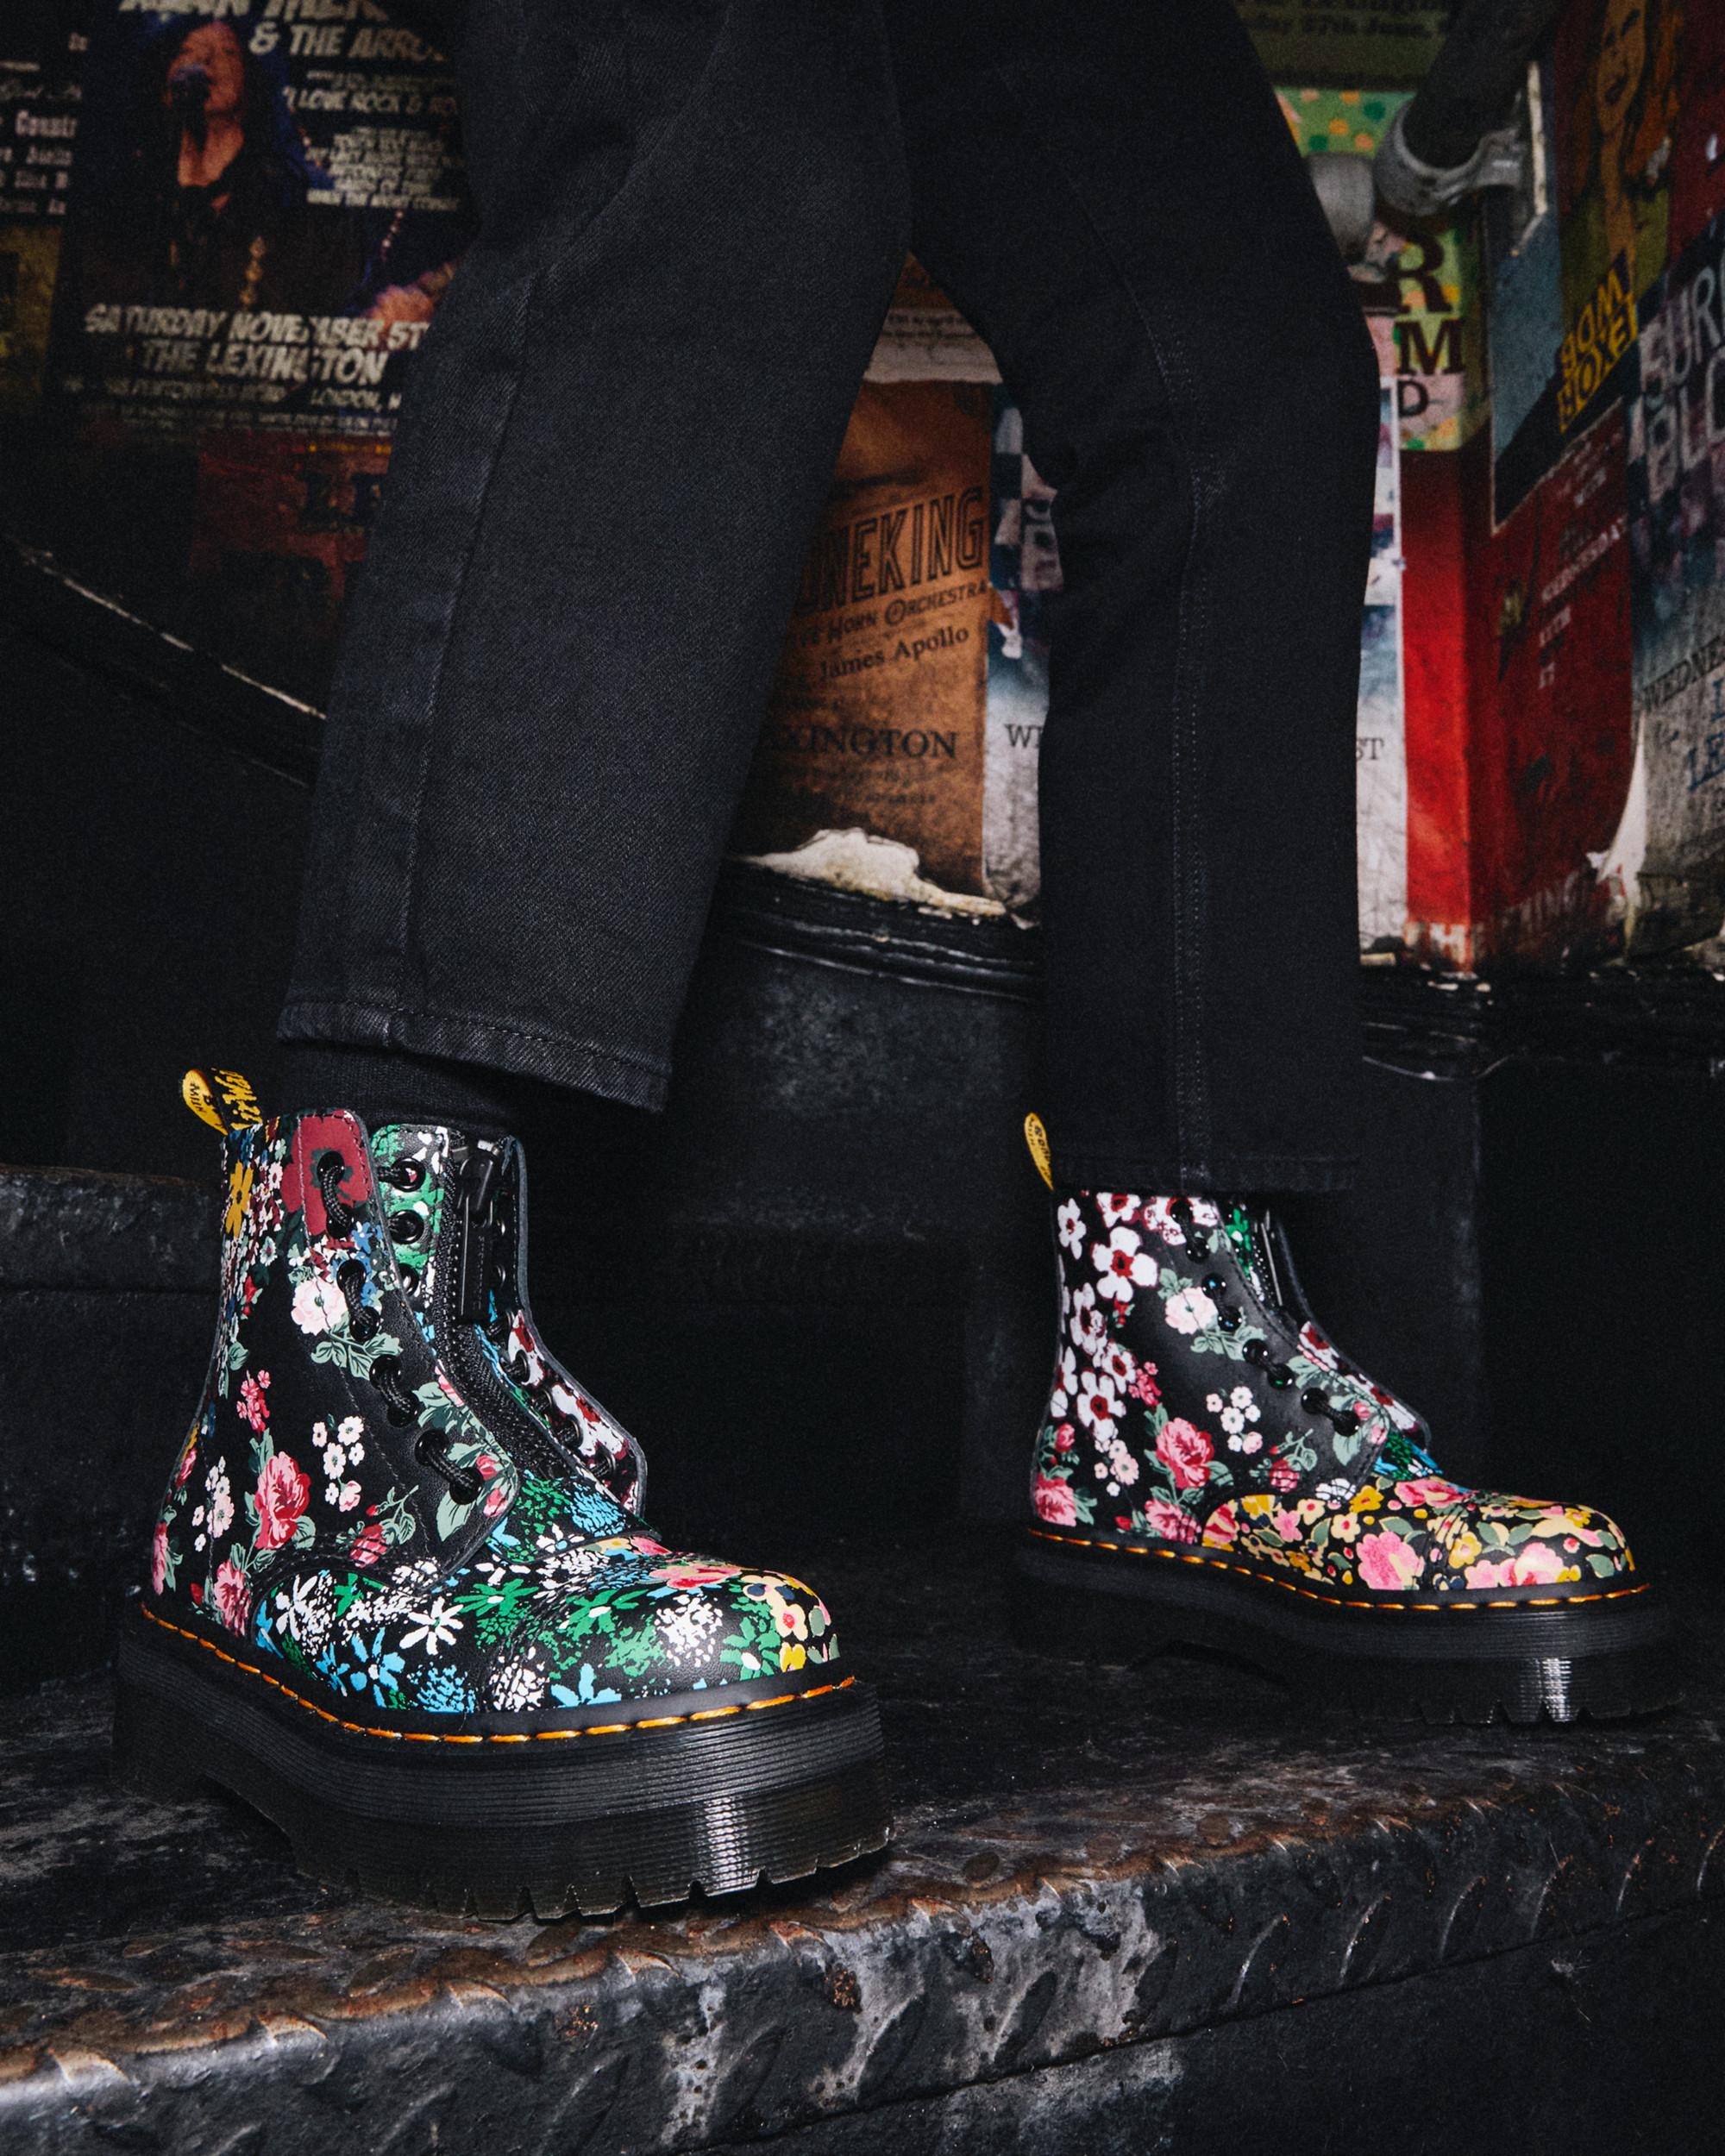 constant bron eerlijk Sinclair Floral Mash Up Leather Platform Boots | Dr. Martens